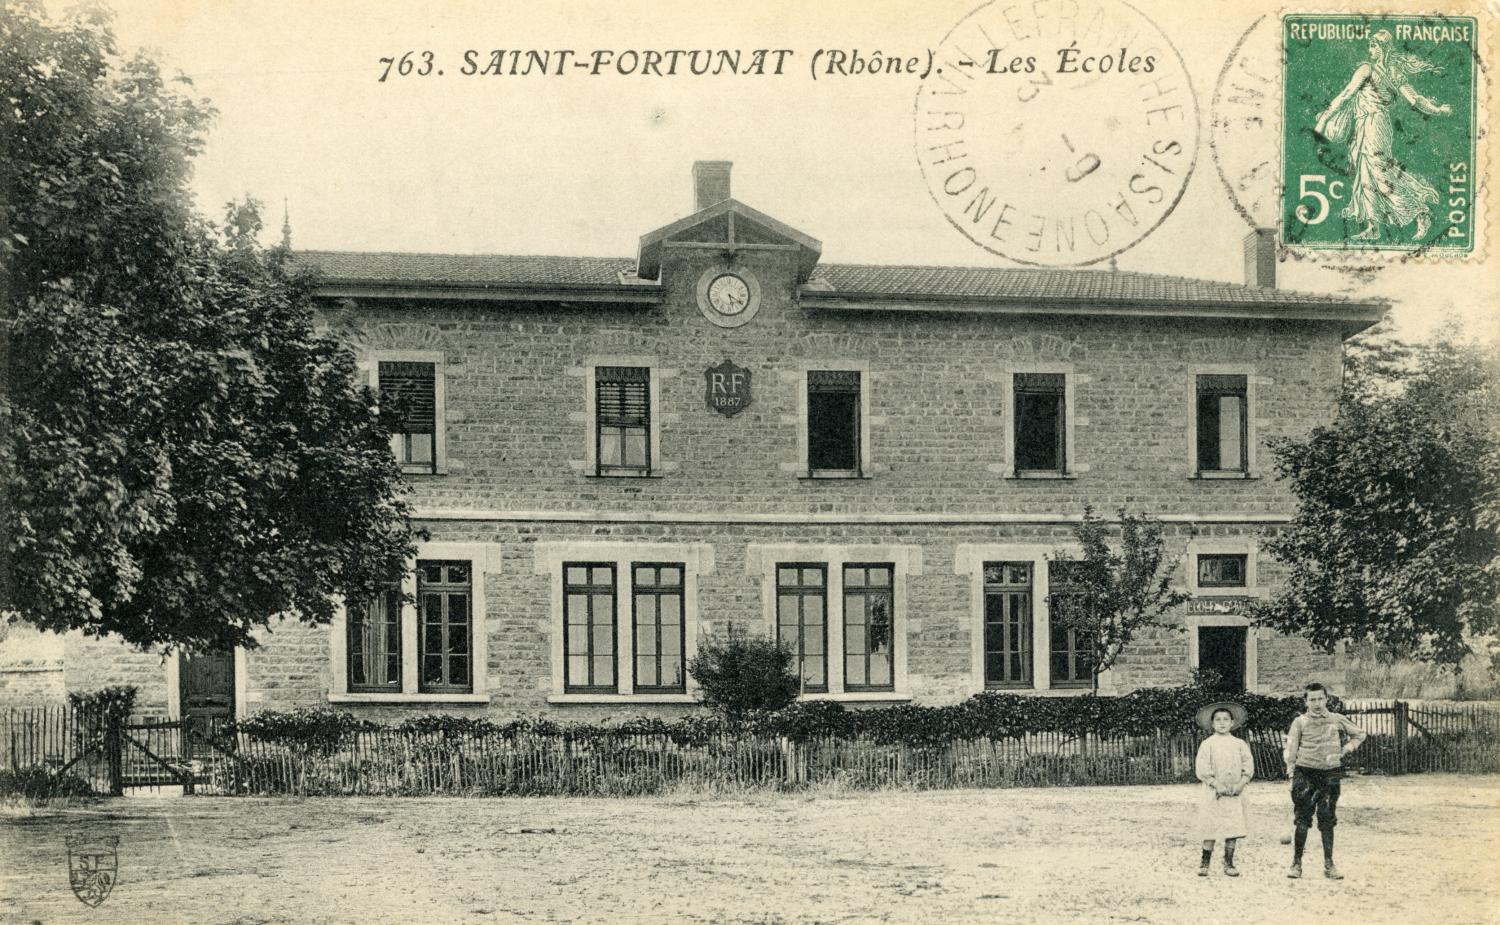 Saint-Fortunat (Rhône). - Les Ecoles